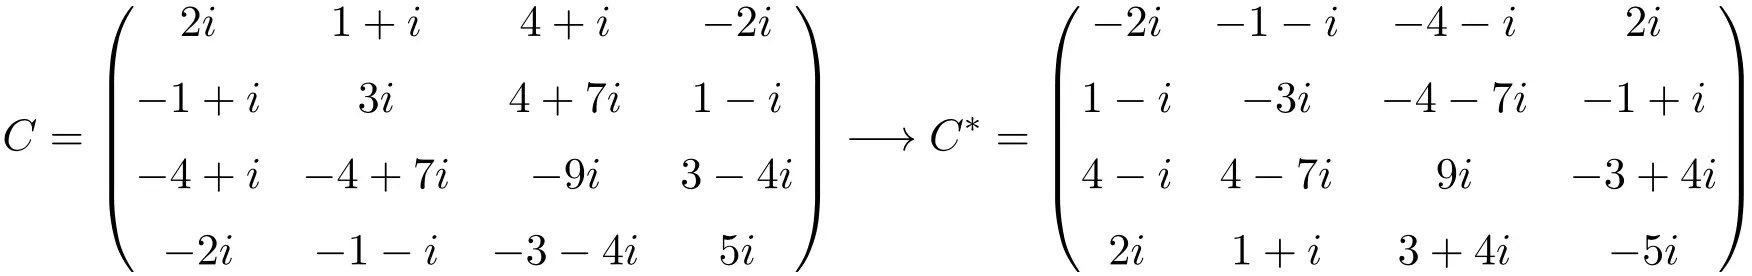 反埃尔米特或维度 4x4 的反埃尔米特矩阵